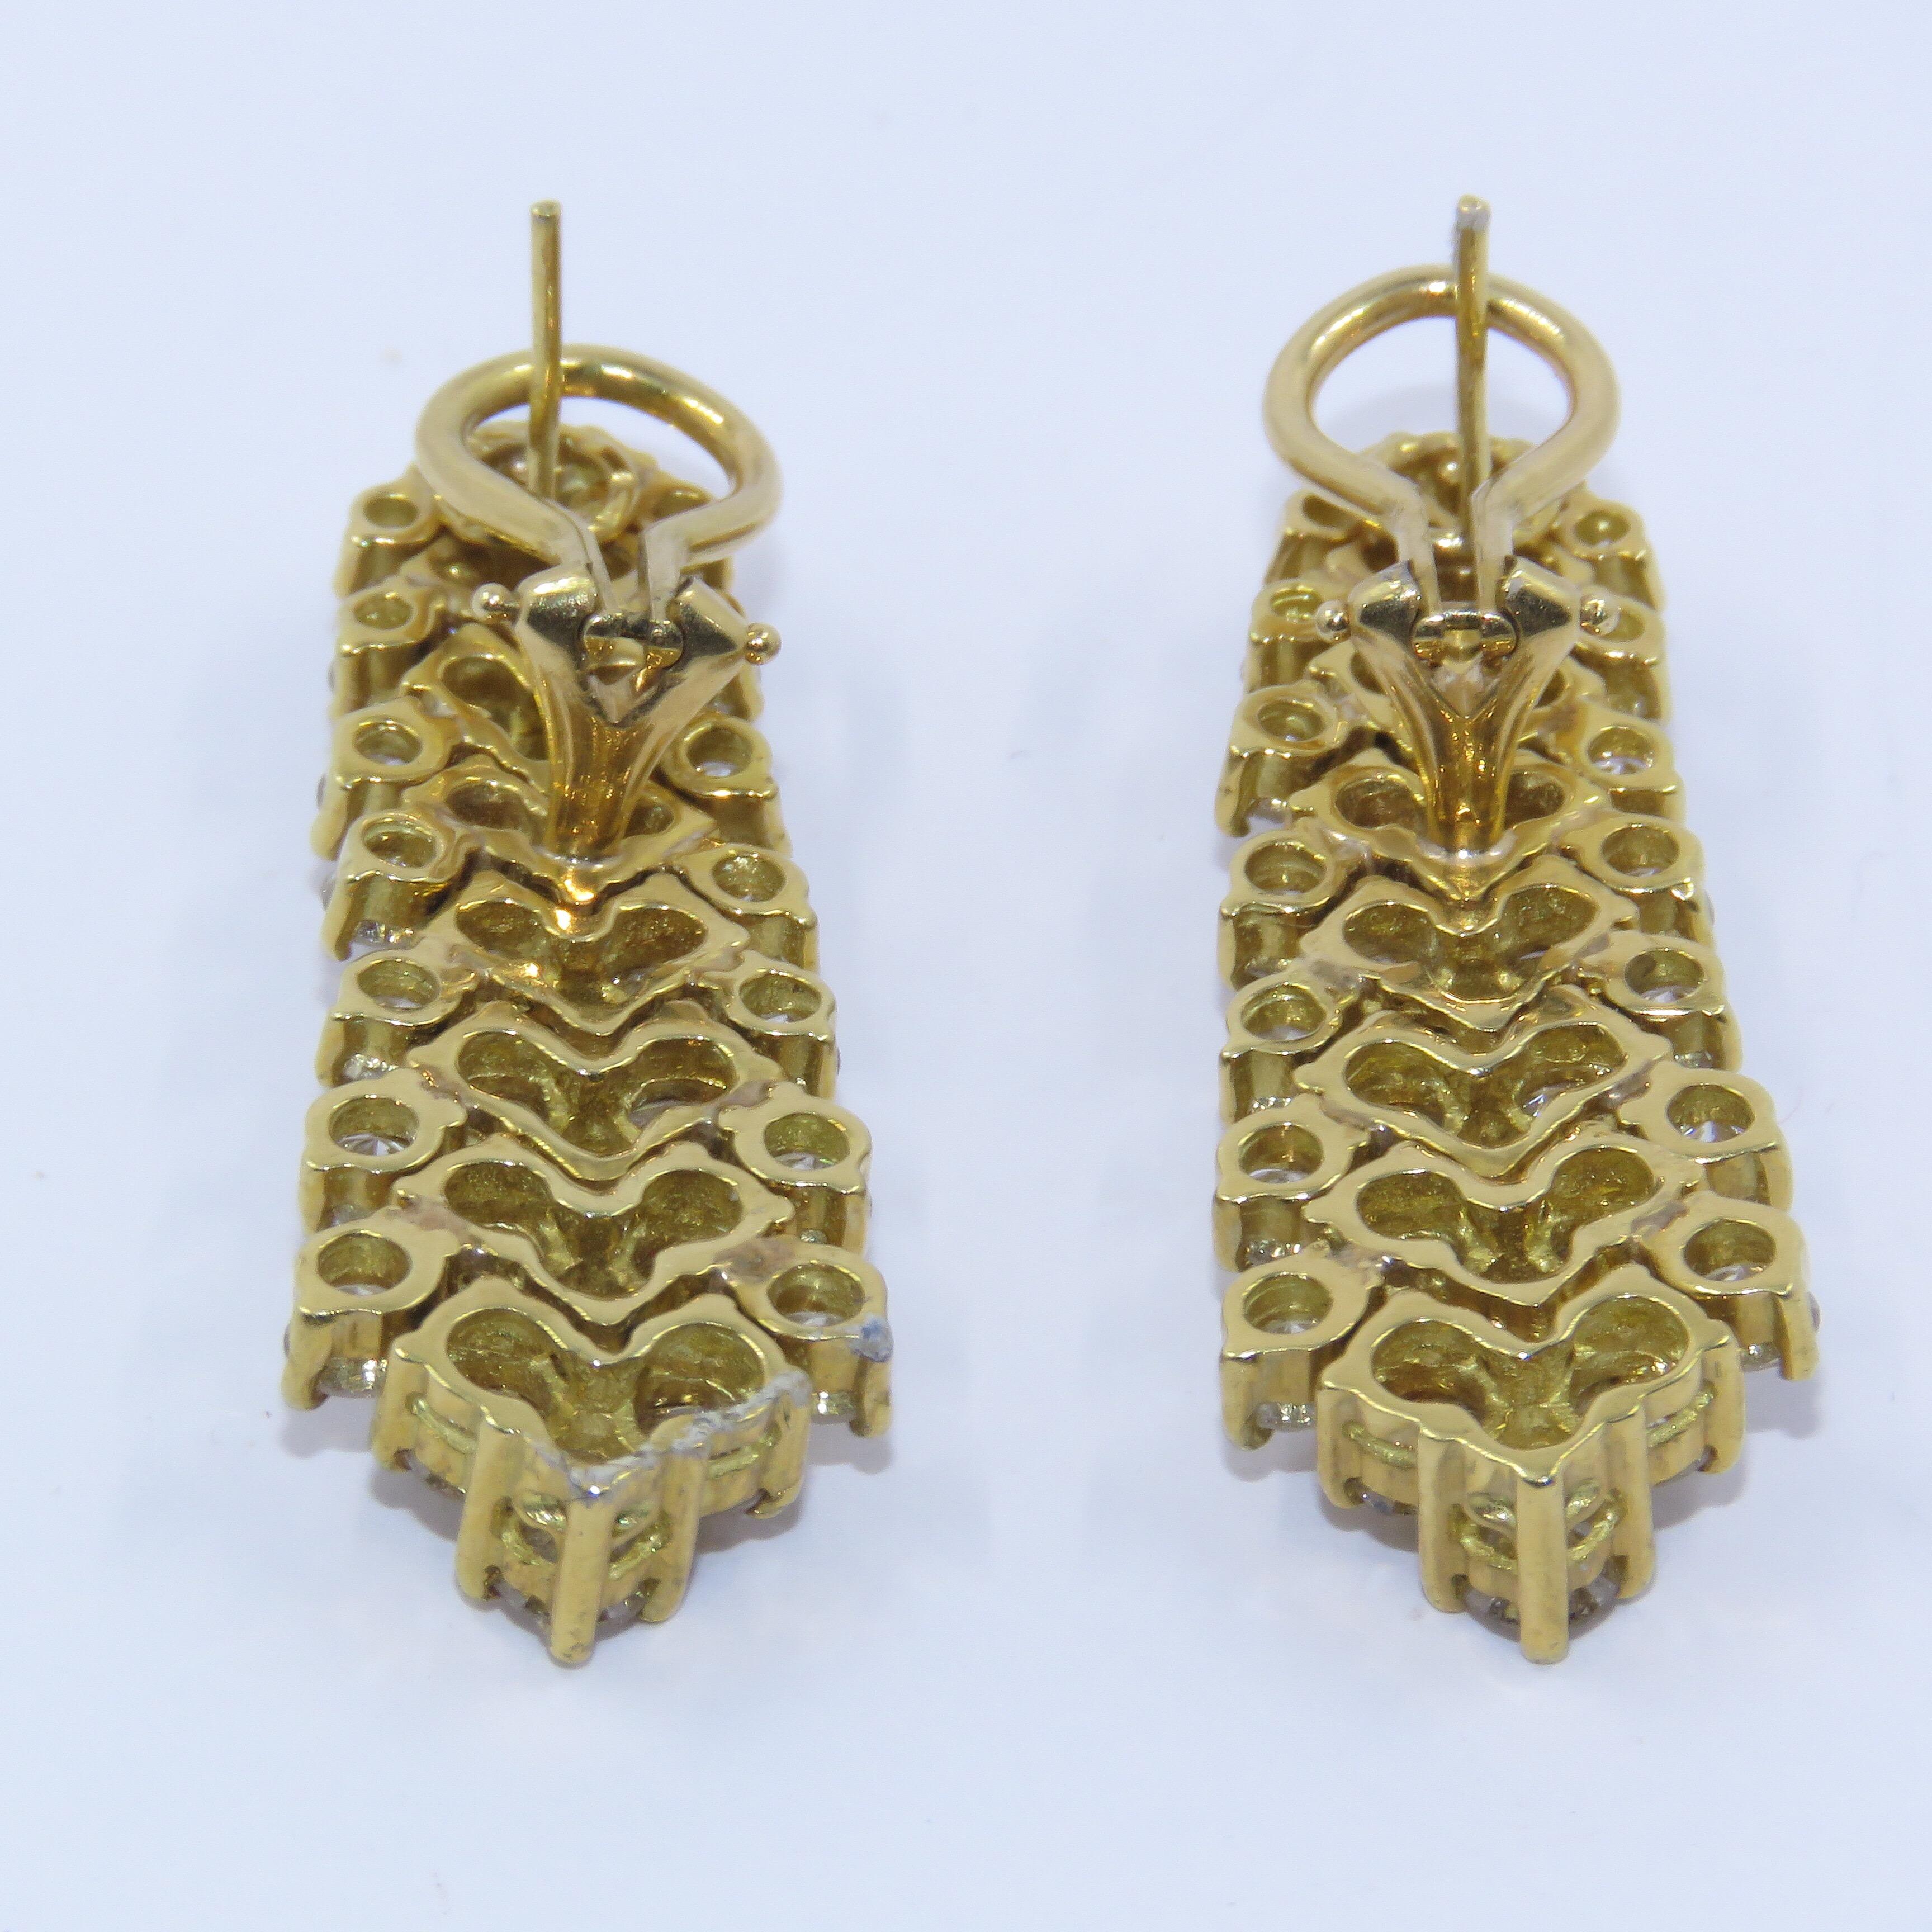 Round Cut Diamond Earrings Set in 14 Karat Gold 61-10181 For Sale